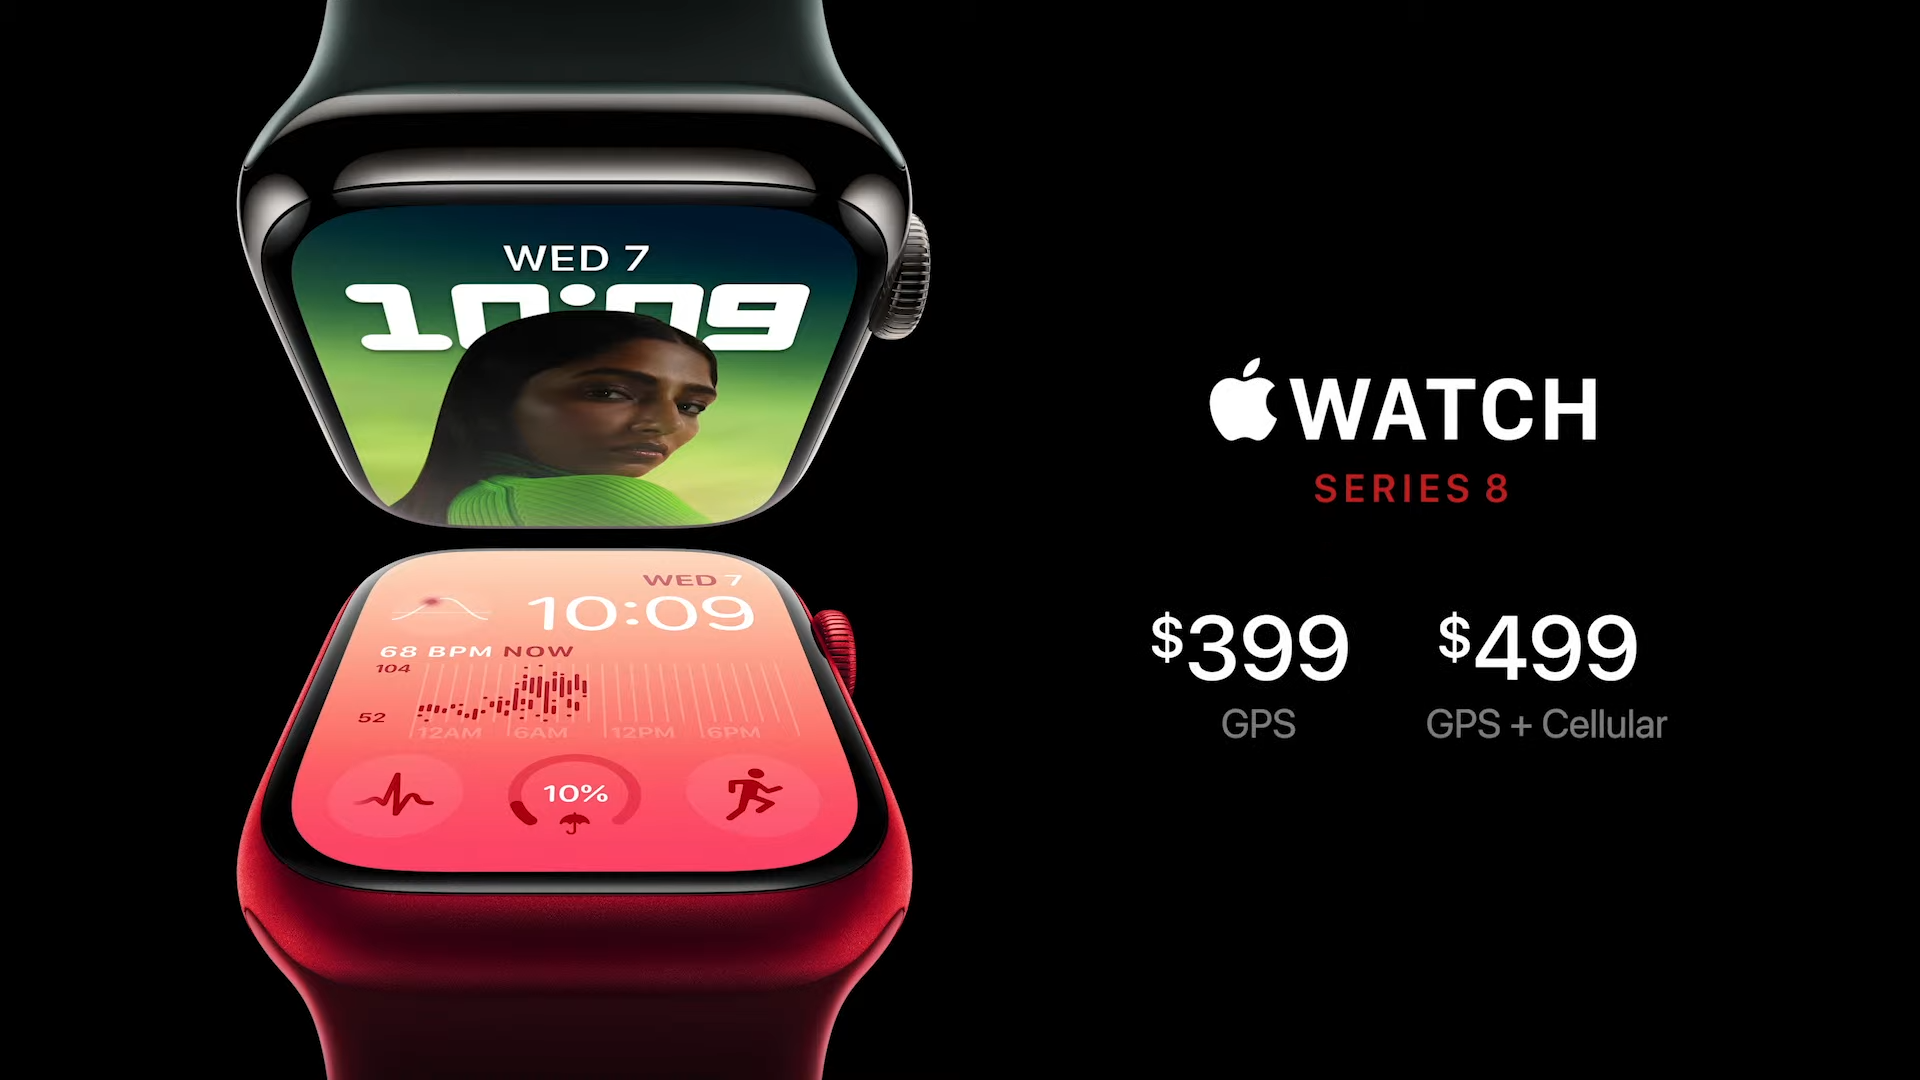 Apple анонсировала умные часы Watch Series 8 — со встроенным термометром, распознаванием ДТП и функциями женского здоровья